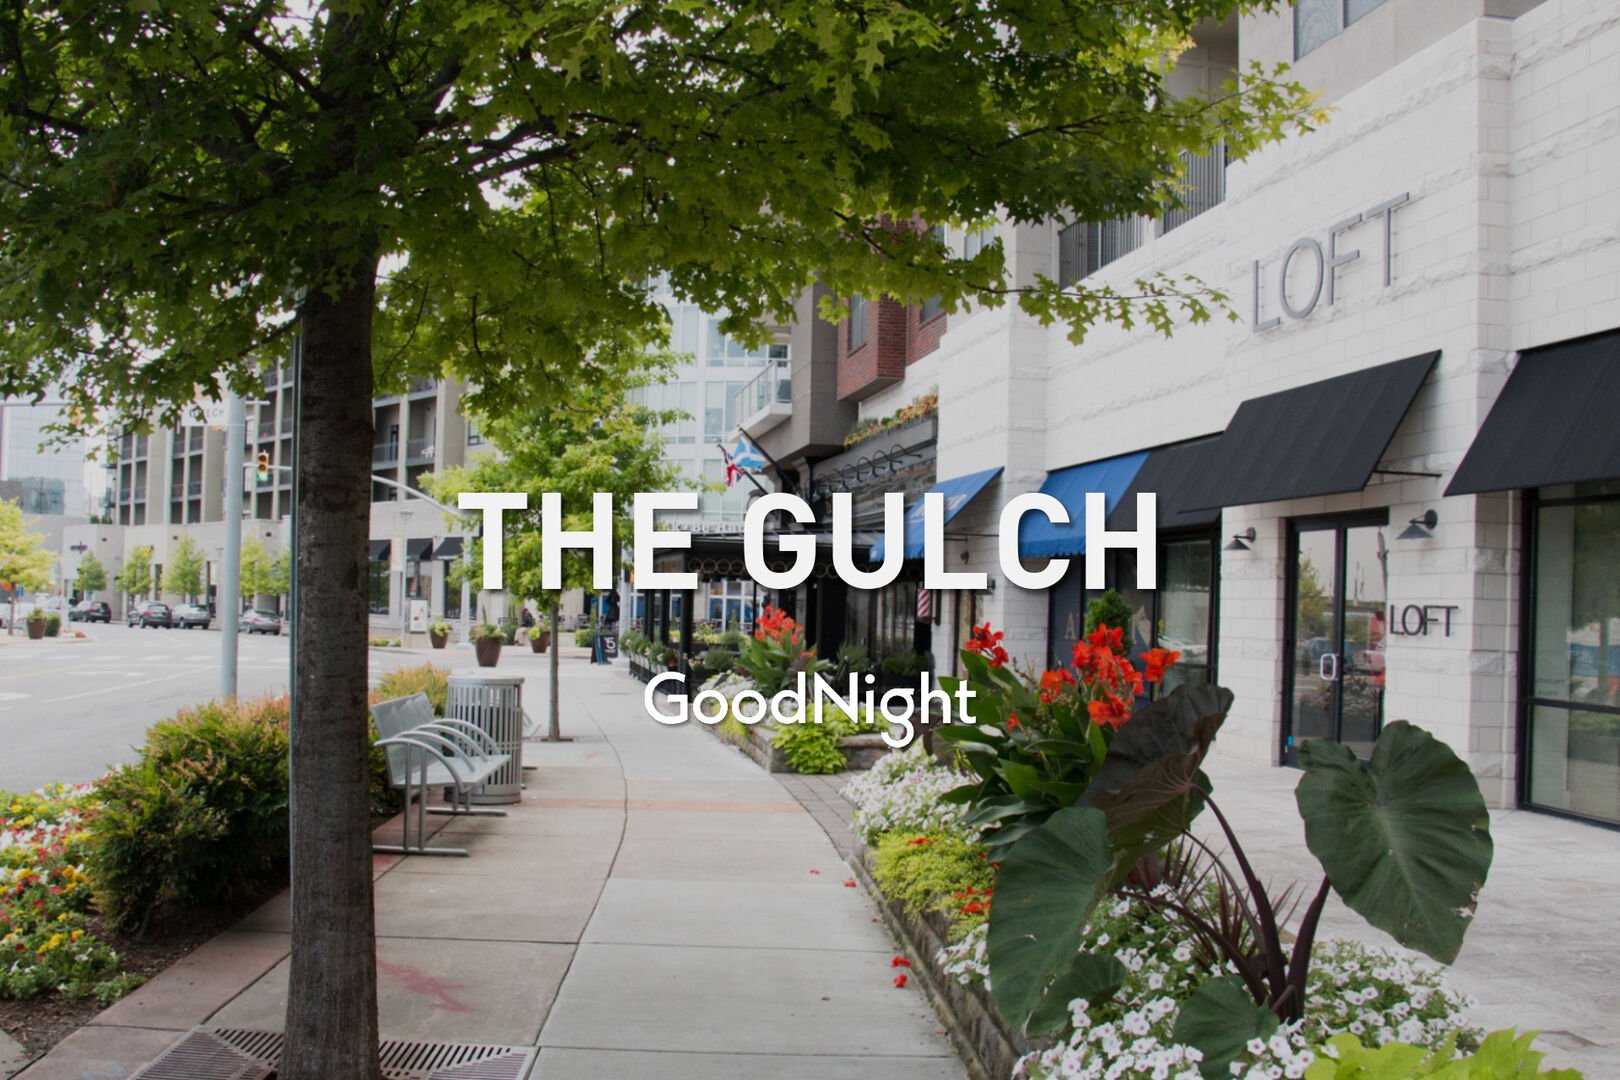 4 min: The Gulch